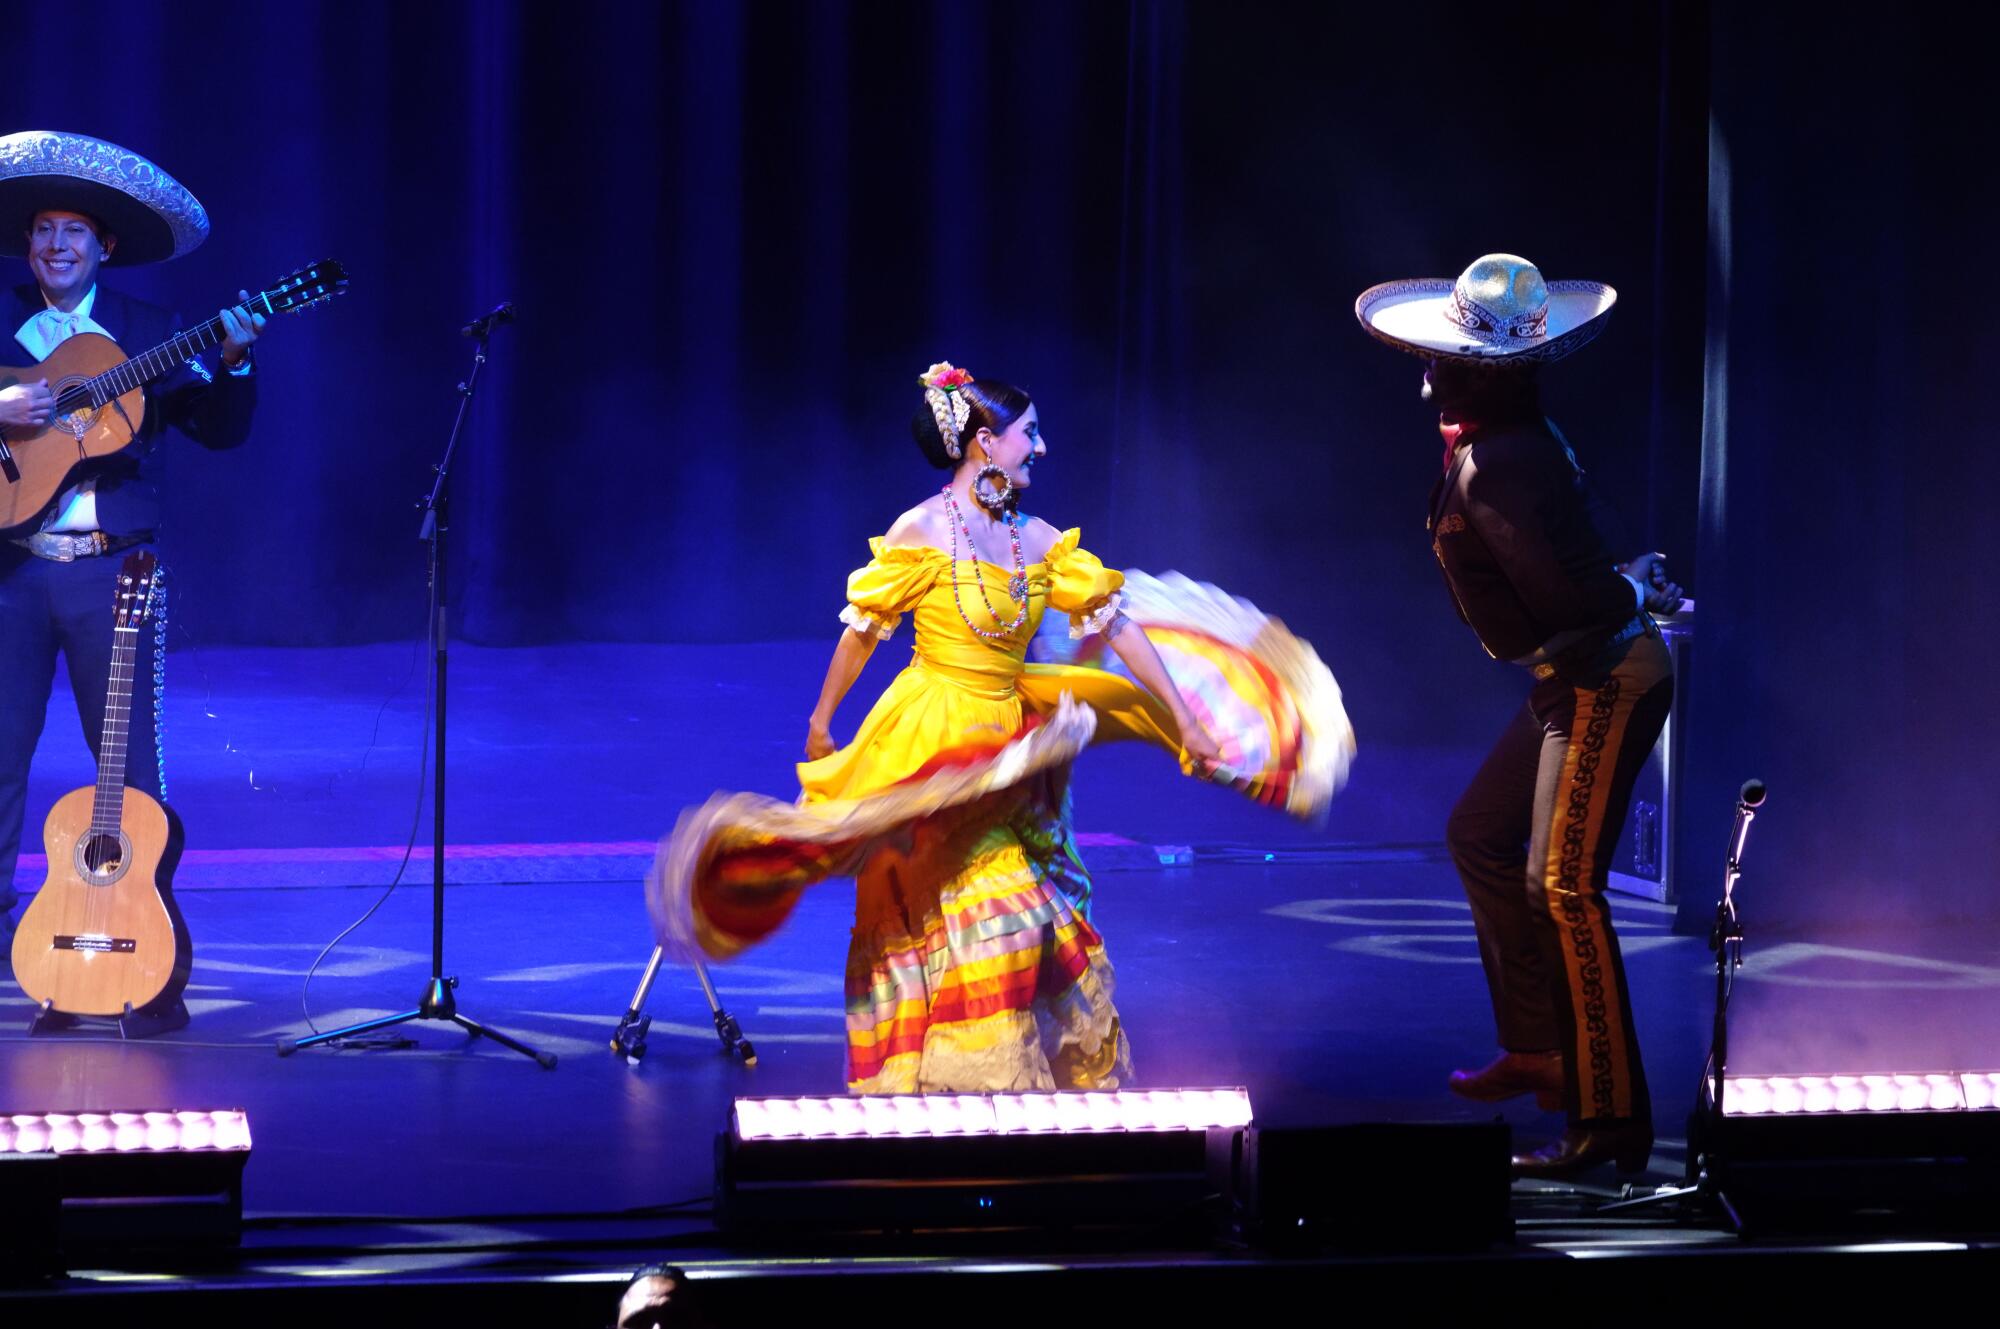 El colorido del folclore mexicano se hizo presente con el Charro y las bailarinas en el escenario.